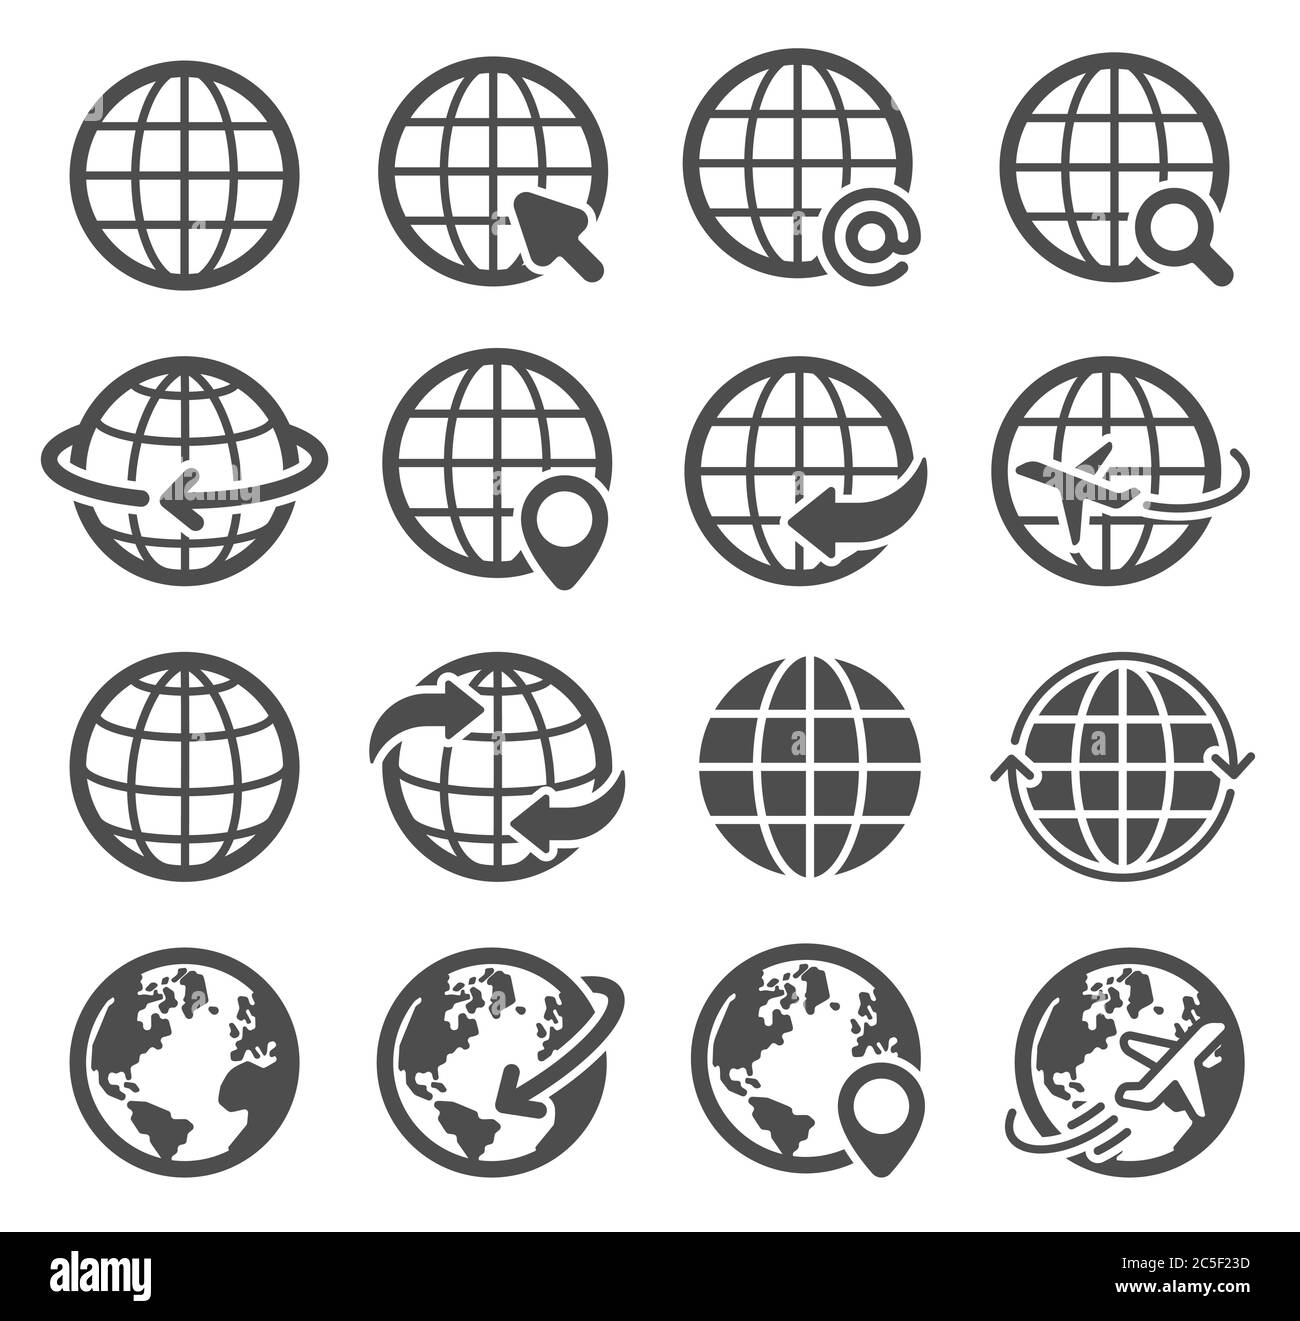 Conjunto de iconos de globo. Mundo tierra, mapa mundial continentes planeta esférico, Internet pictogramas de comunicación global, símbolos de vector geográfico Ilustración del Vector